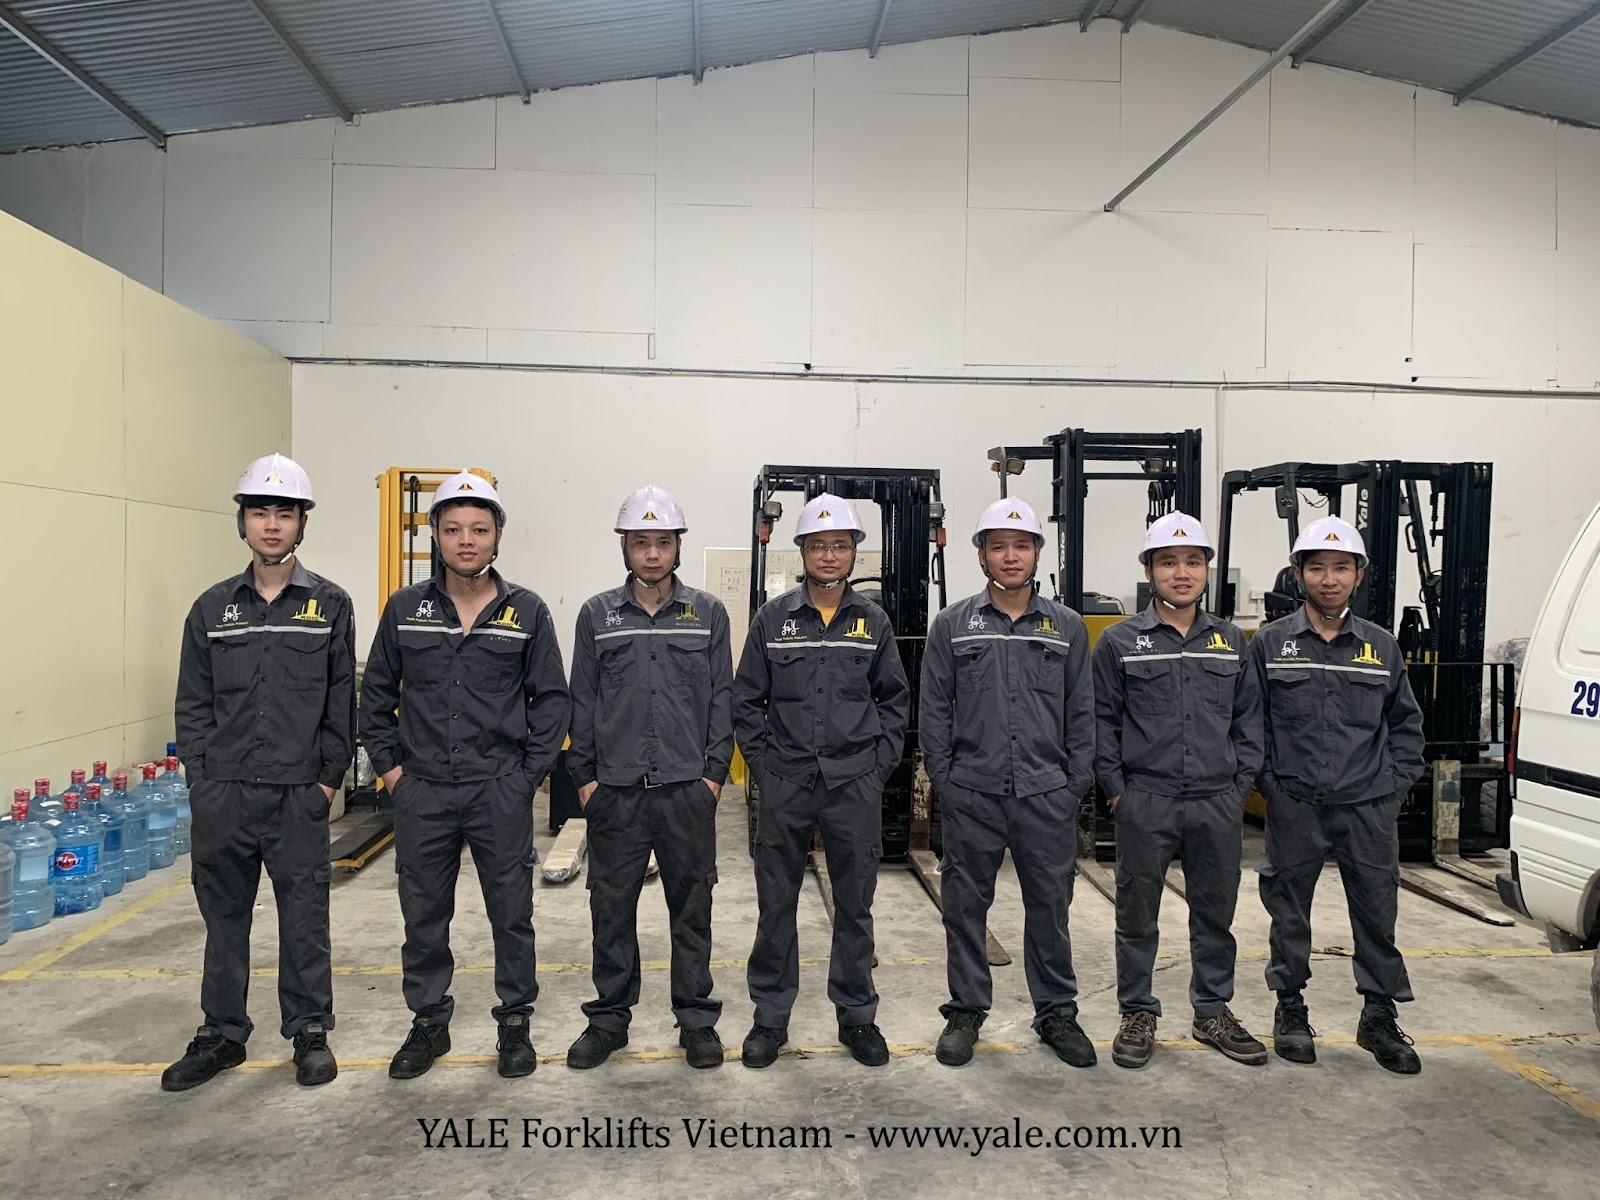 Đội ngũ kỹ thuật Yale Forklifts Việt Nam - đơn vị chuyên cung cấp sản phẩm xe nâng Yale chính hãng